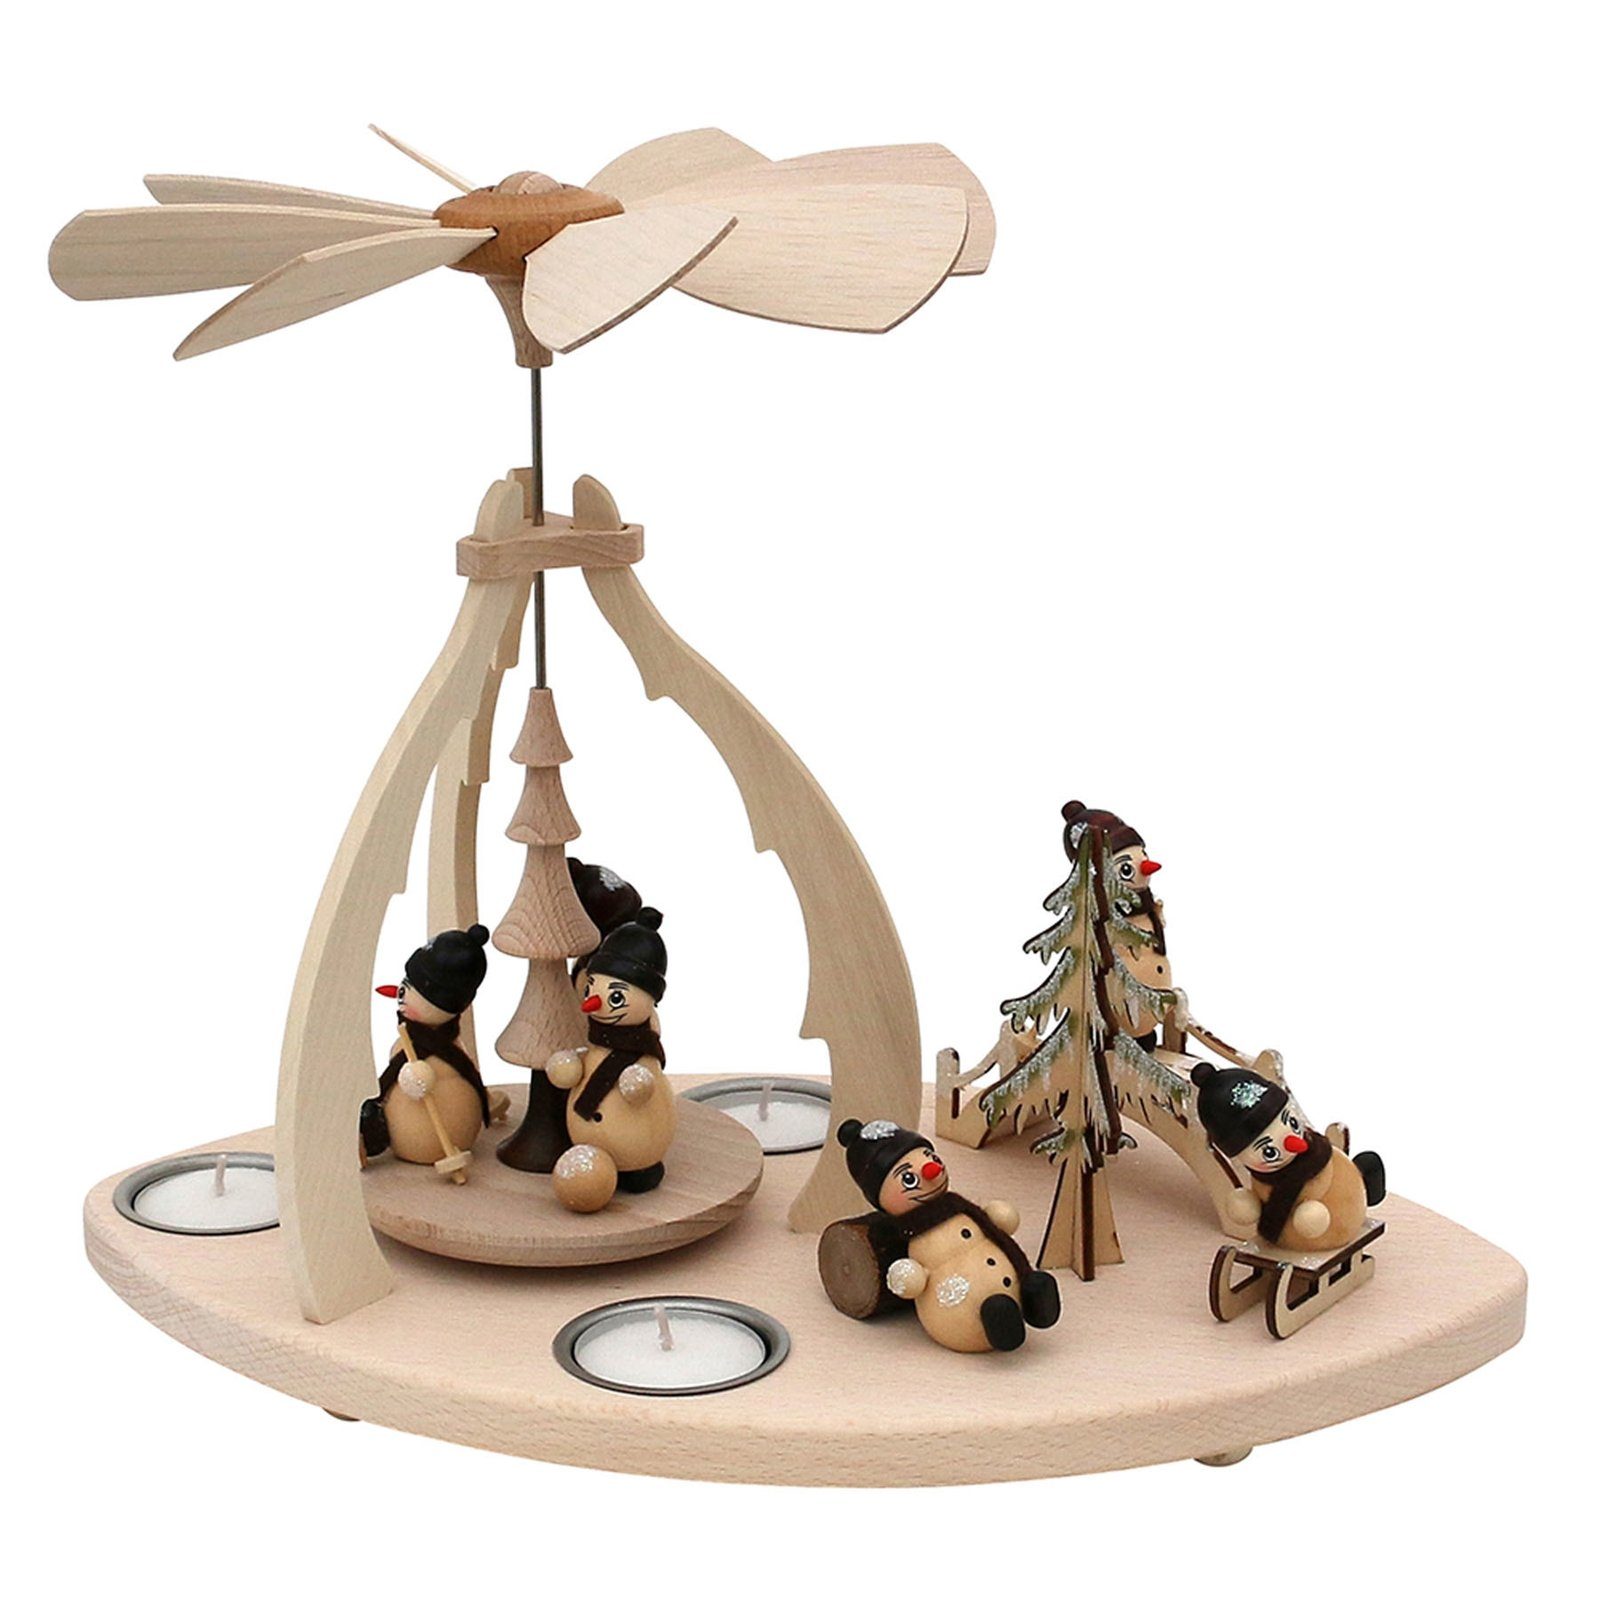 SIGRO Weihnachtspyramide Holz Teelicht-Tischpyramide Schneemannfiguren